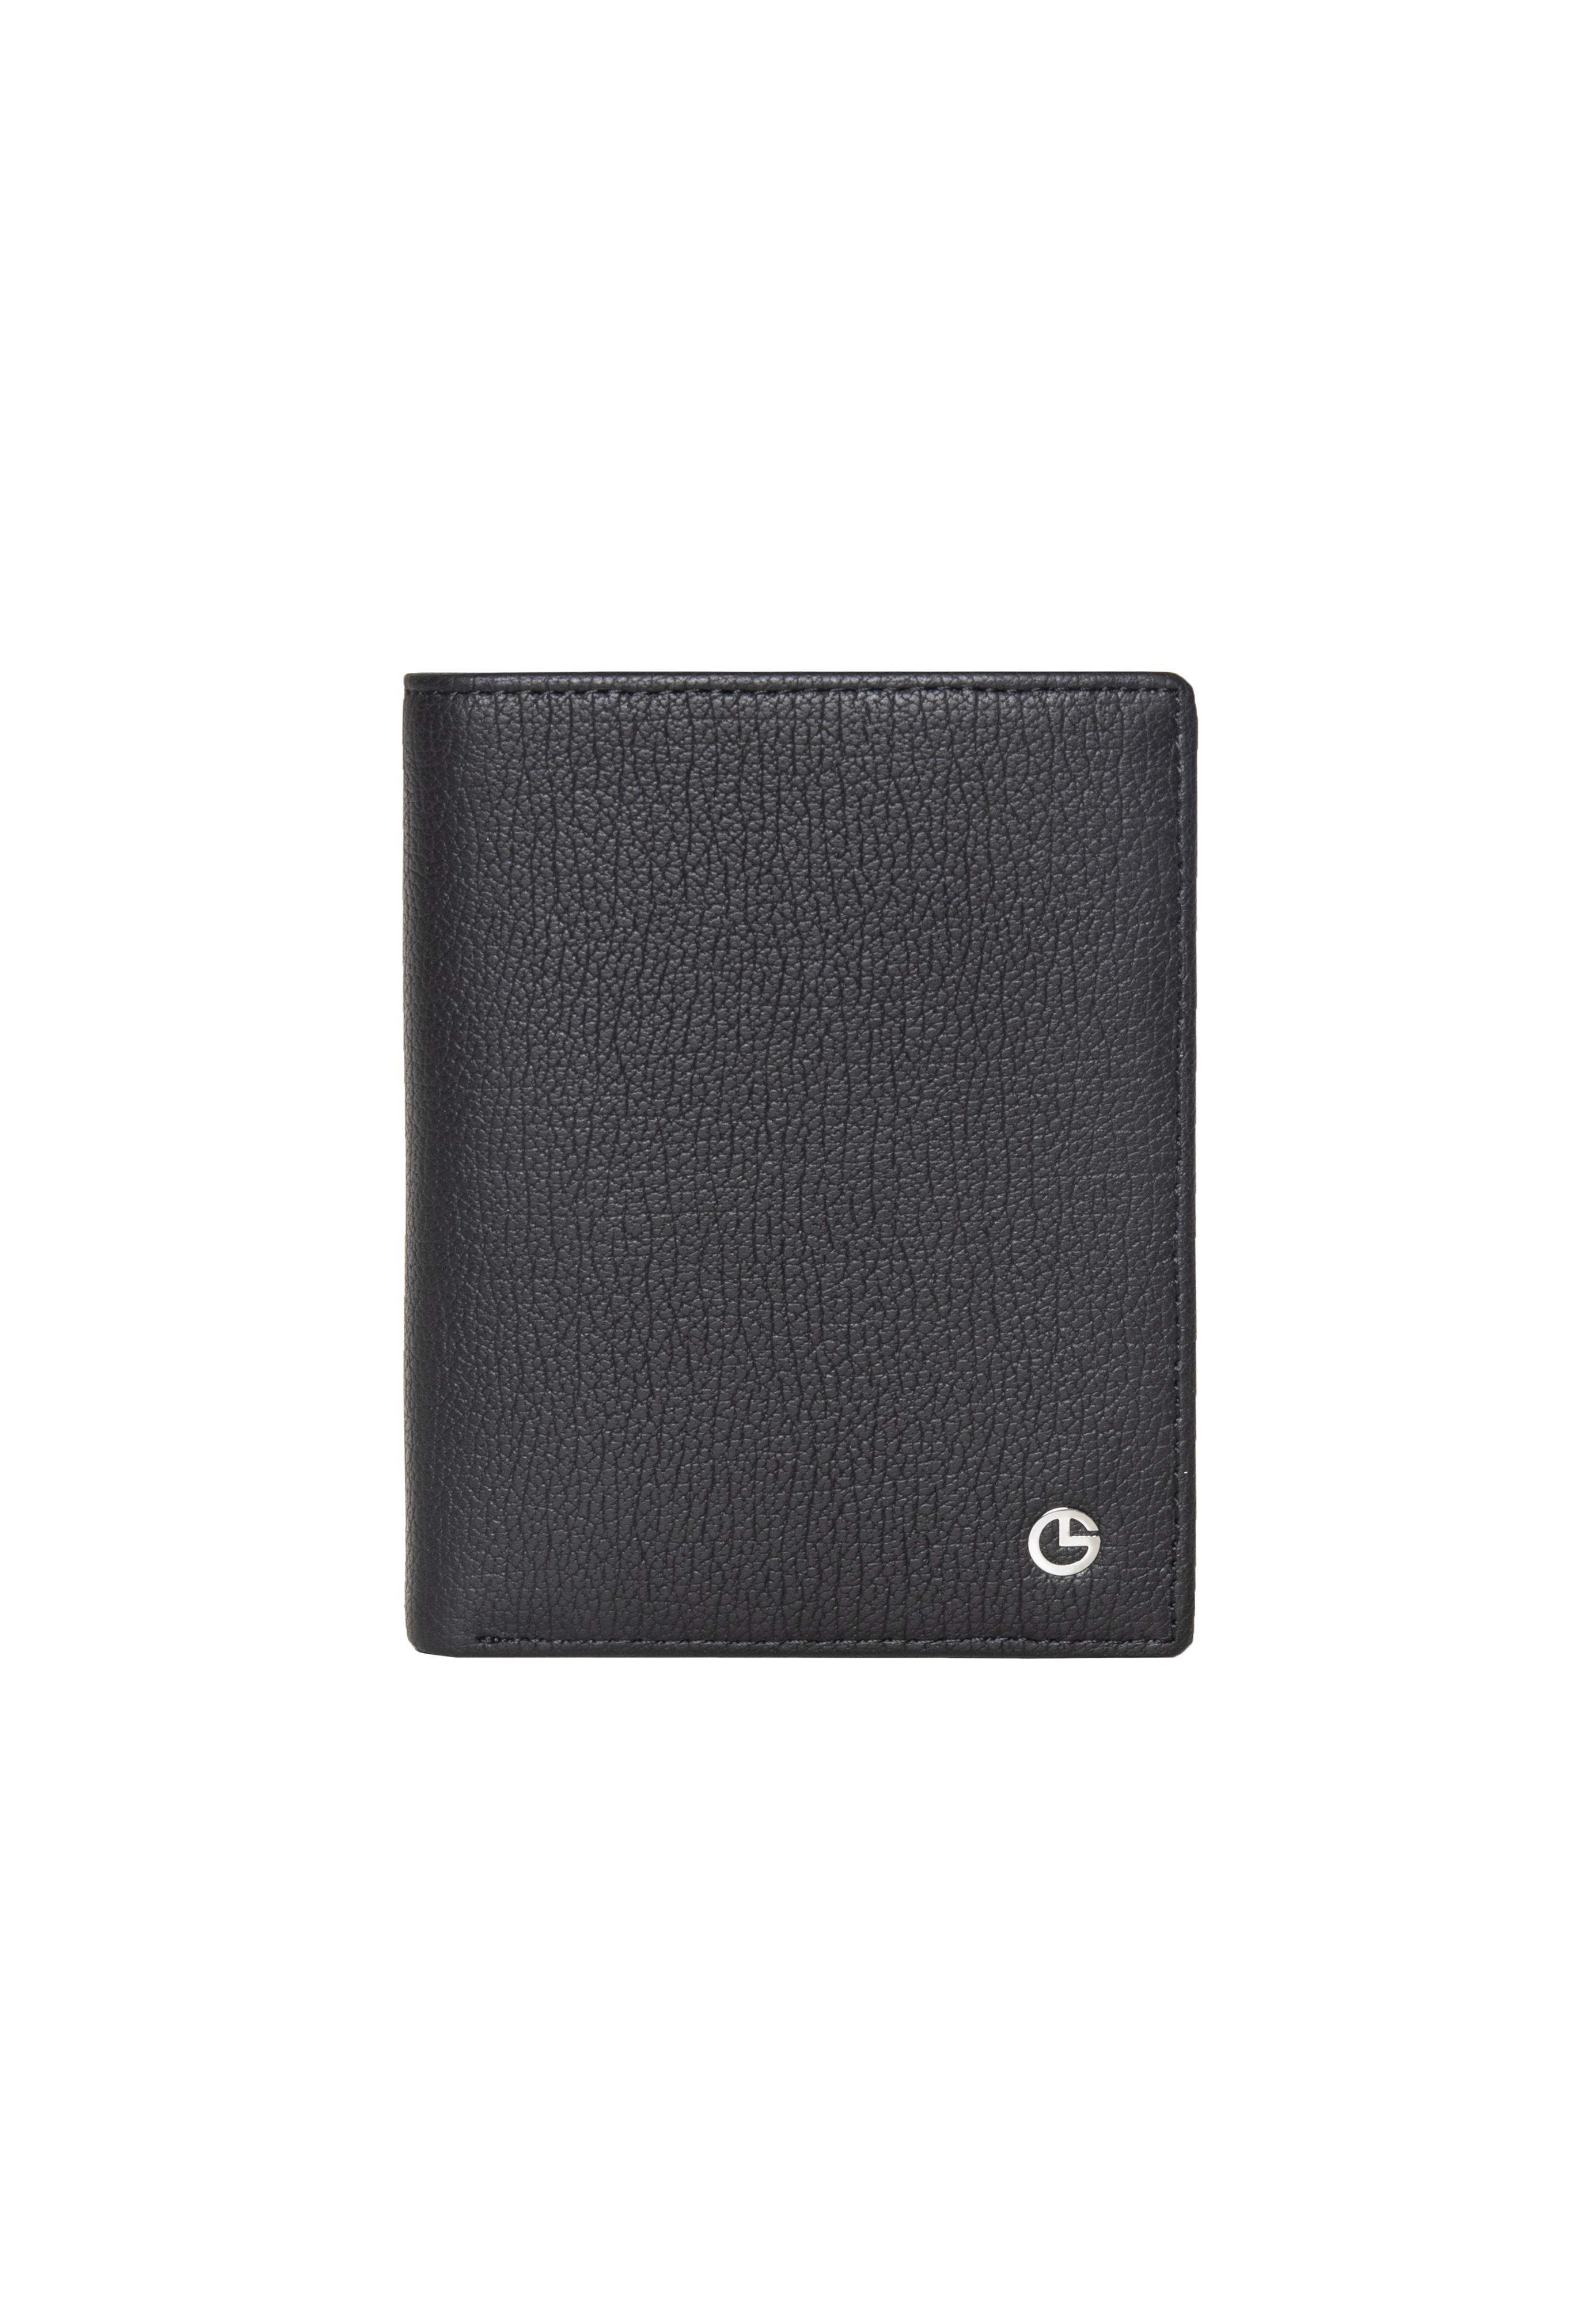 [Online Exclusive] Goldlion Genuine Leather Card Holder (6 Cards Slot)